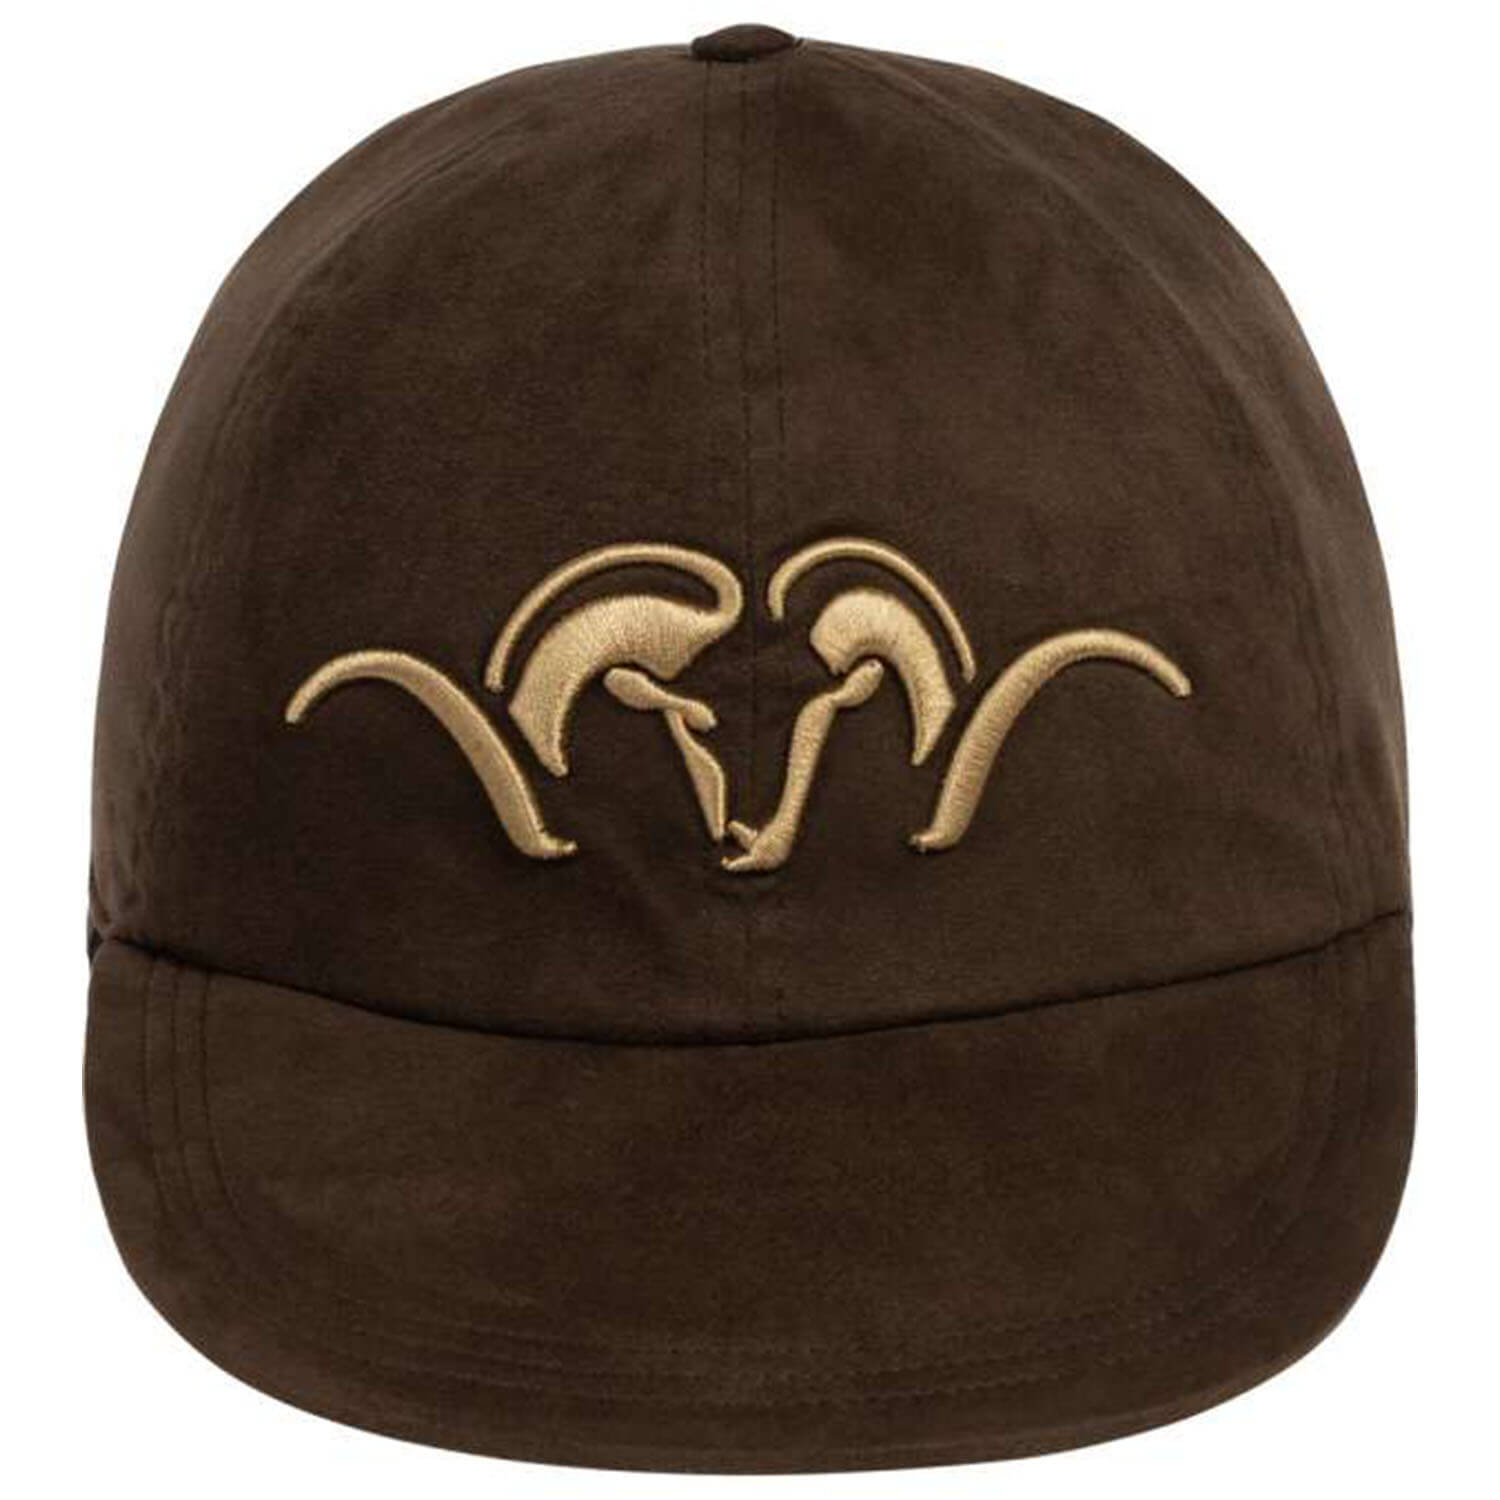 Blaser cap Suede Insulated (brown/blaze orange)